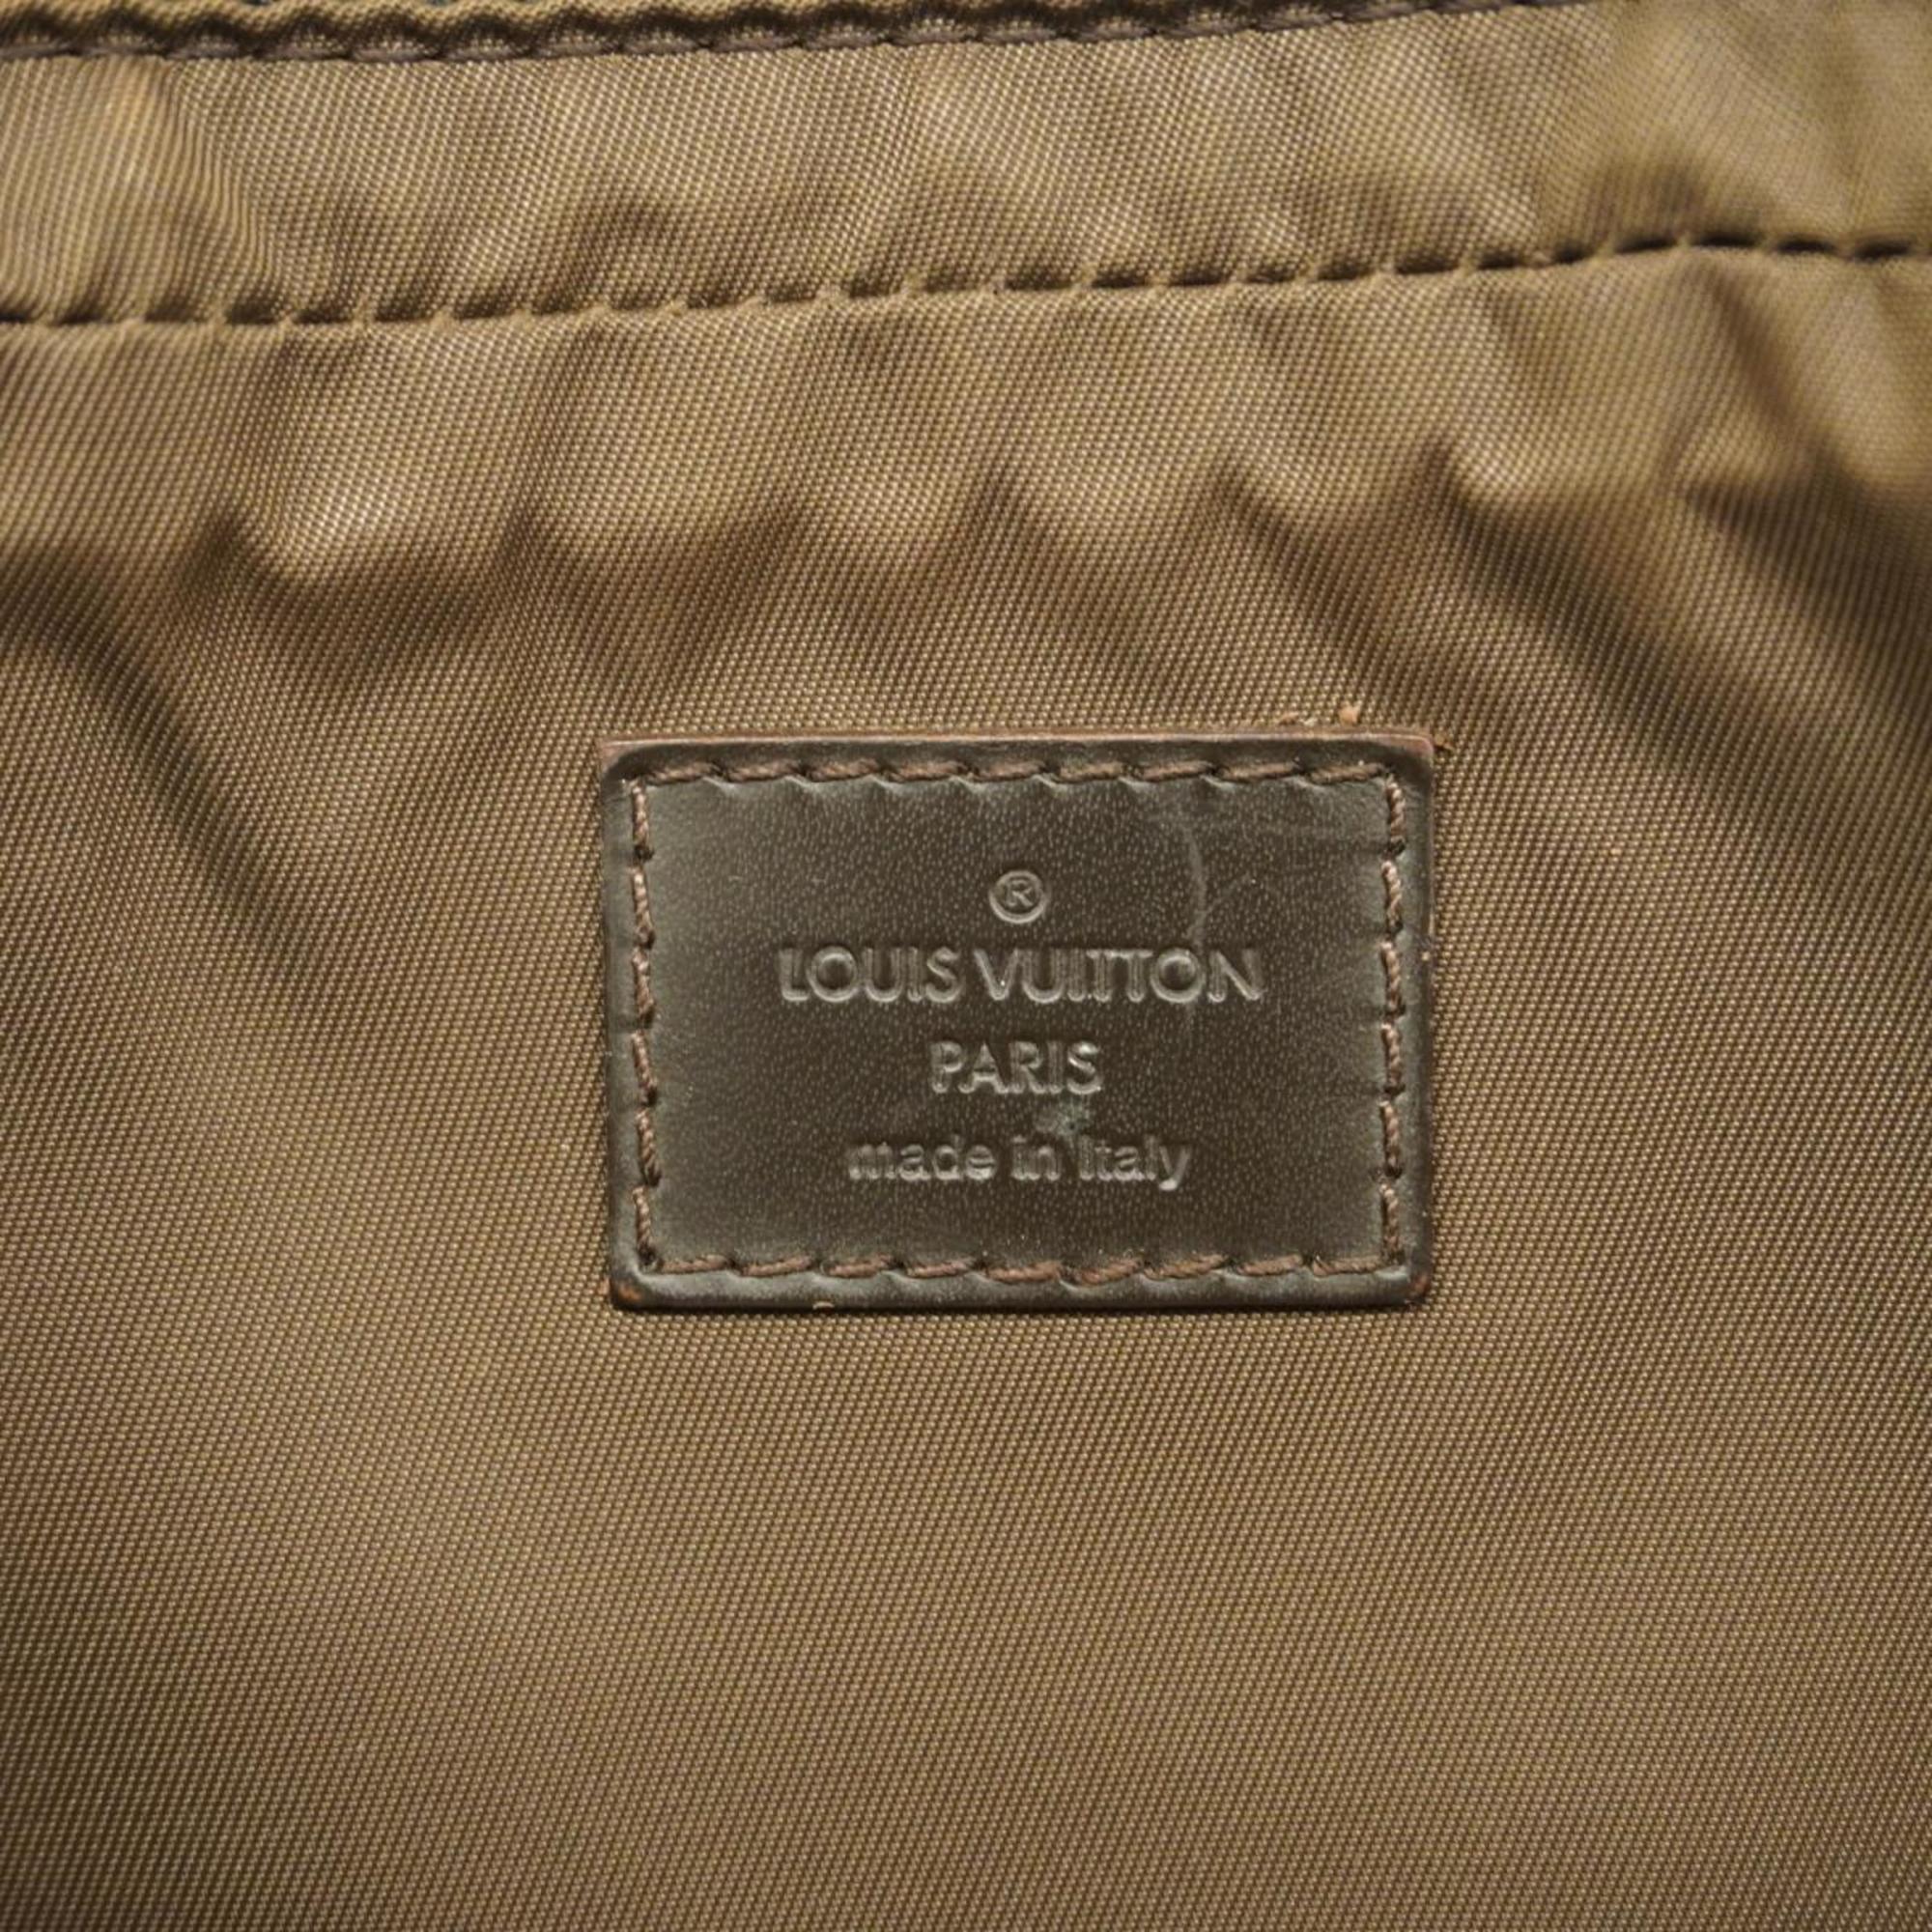 ルイ・ヴィトン(Louis Vuitton) ルイ・ヴィトン ウエストバッグ ダミエ・ジェアン アクロバット M93620 ノワールメンズ